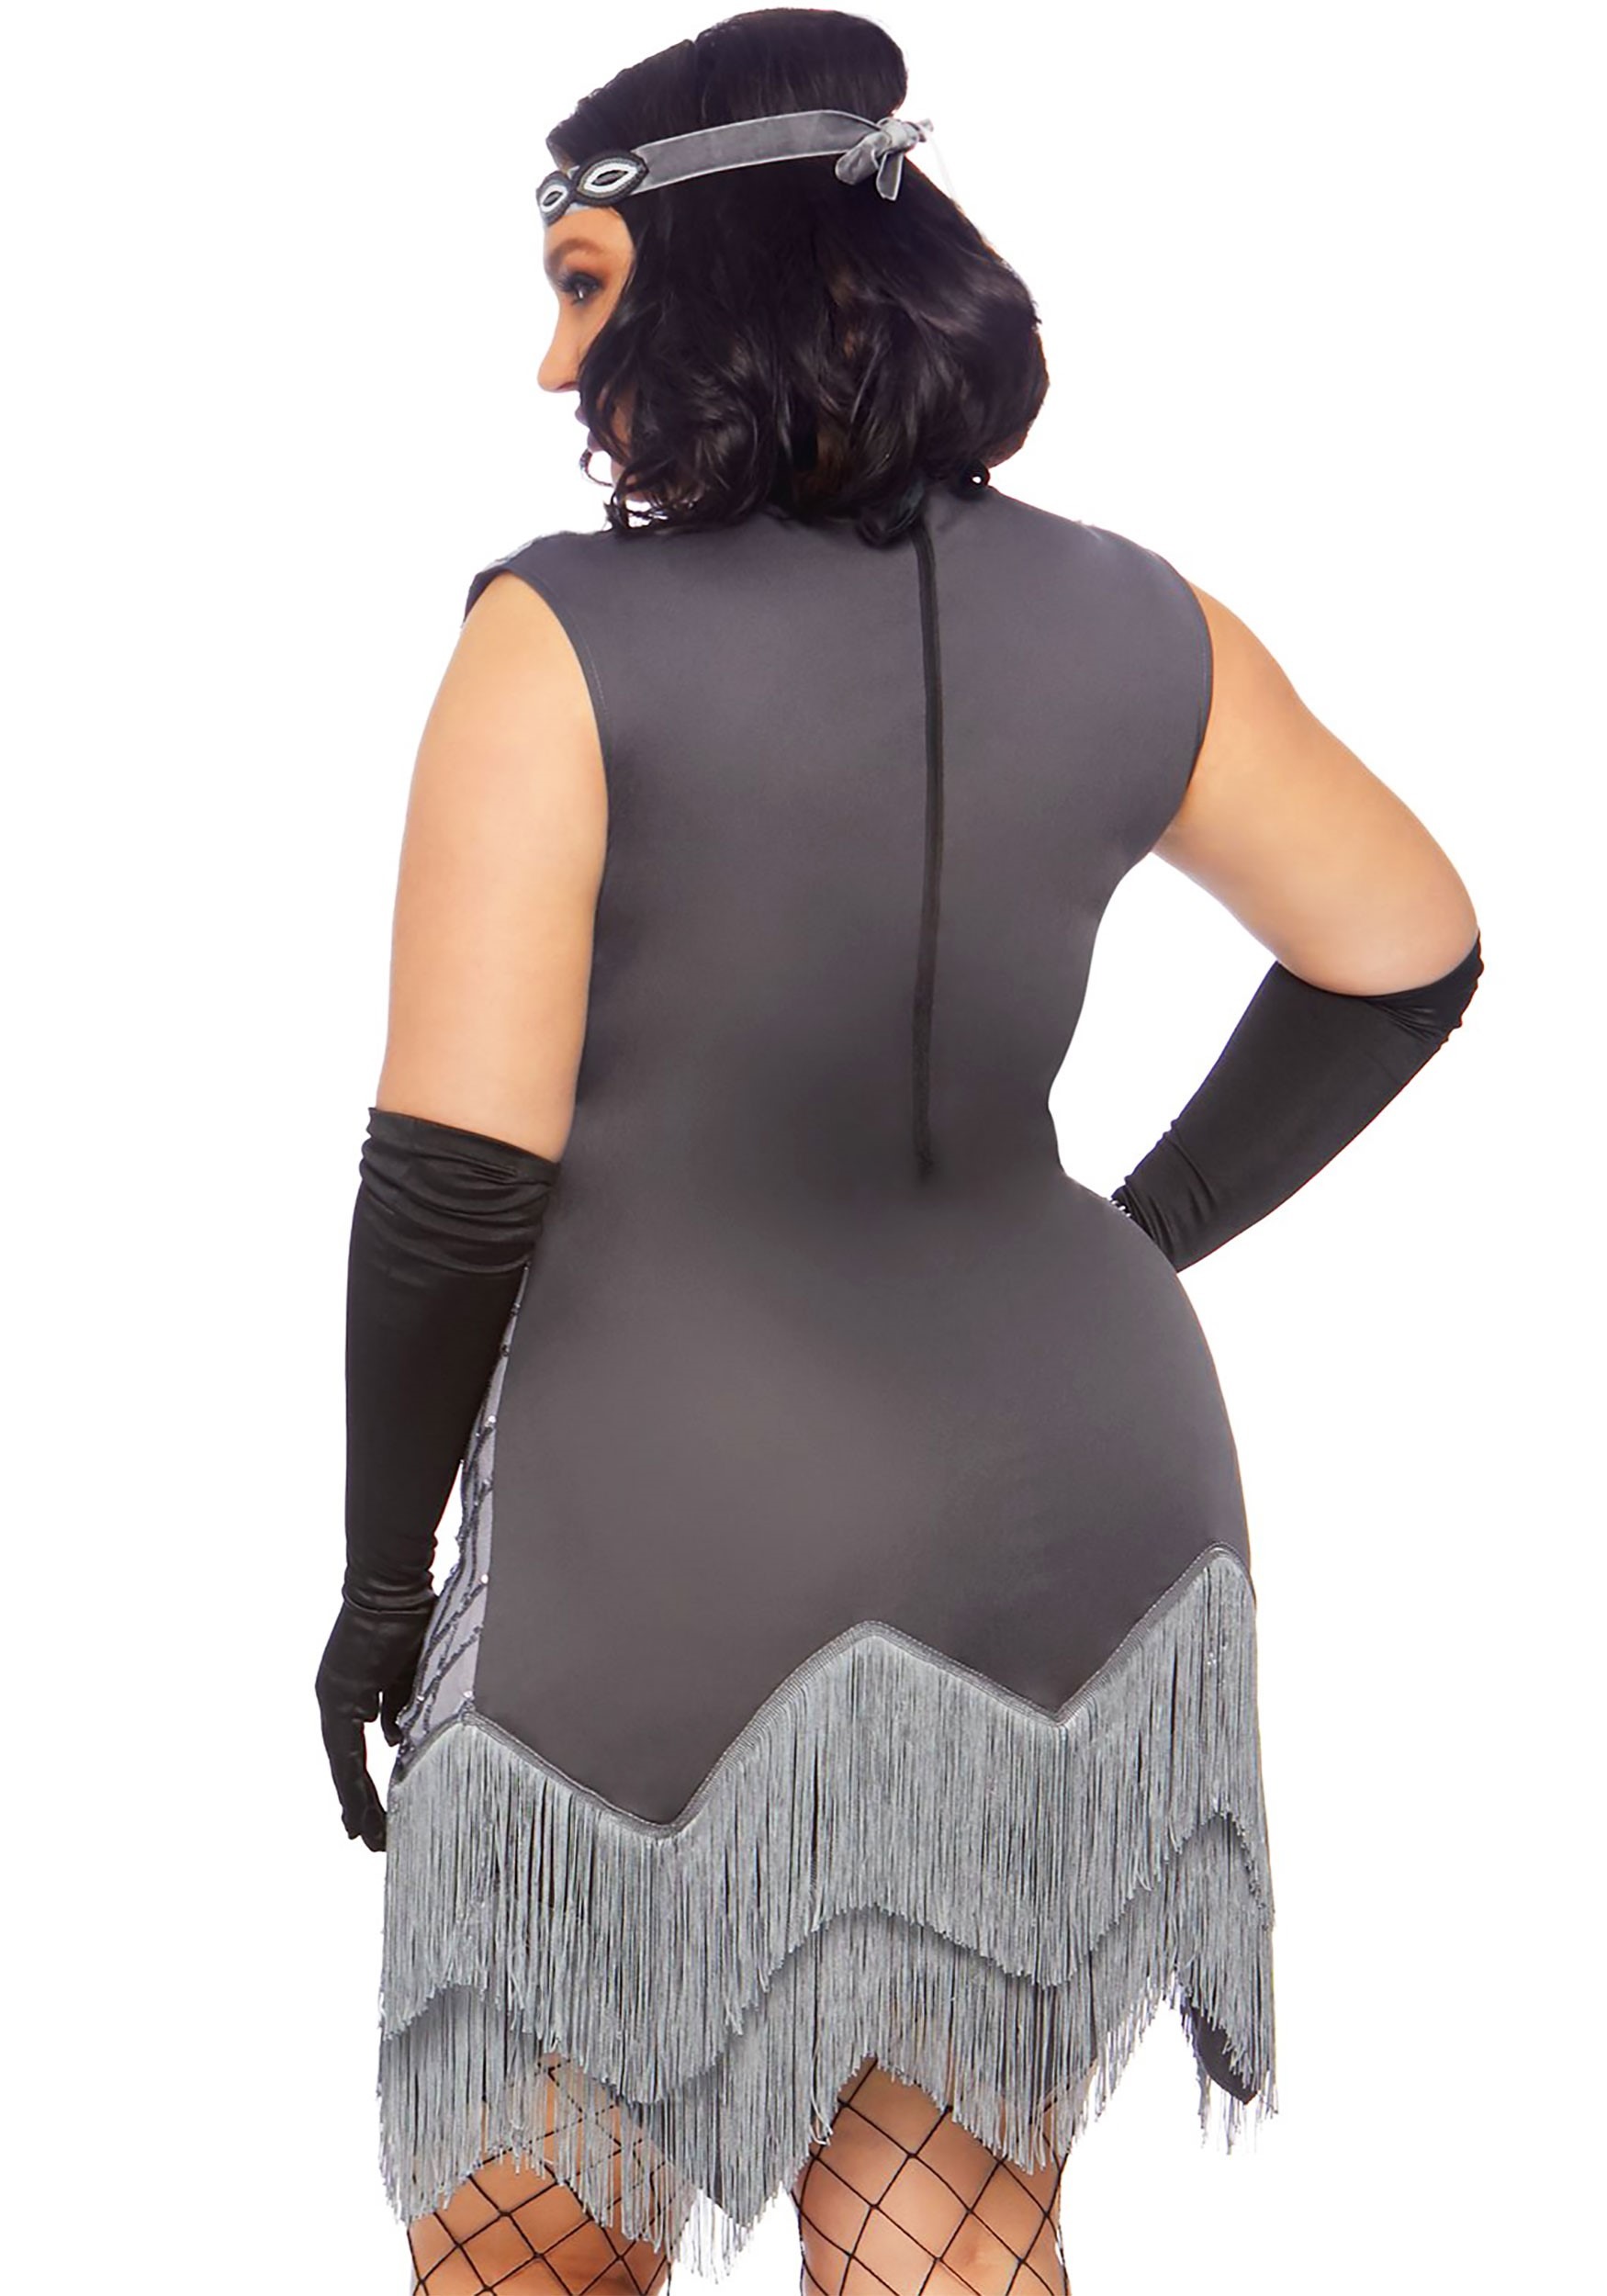 Roaring Roxy Flapper Women's Plus Size Fancy Dress Costume